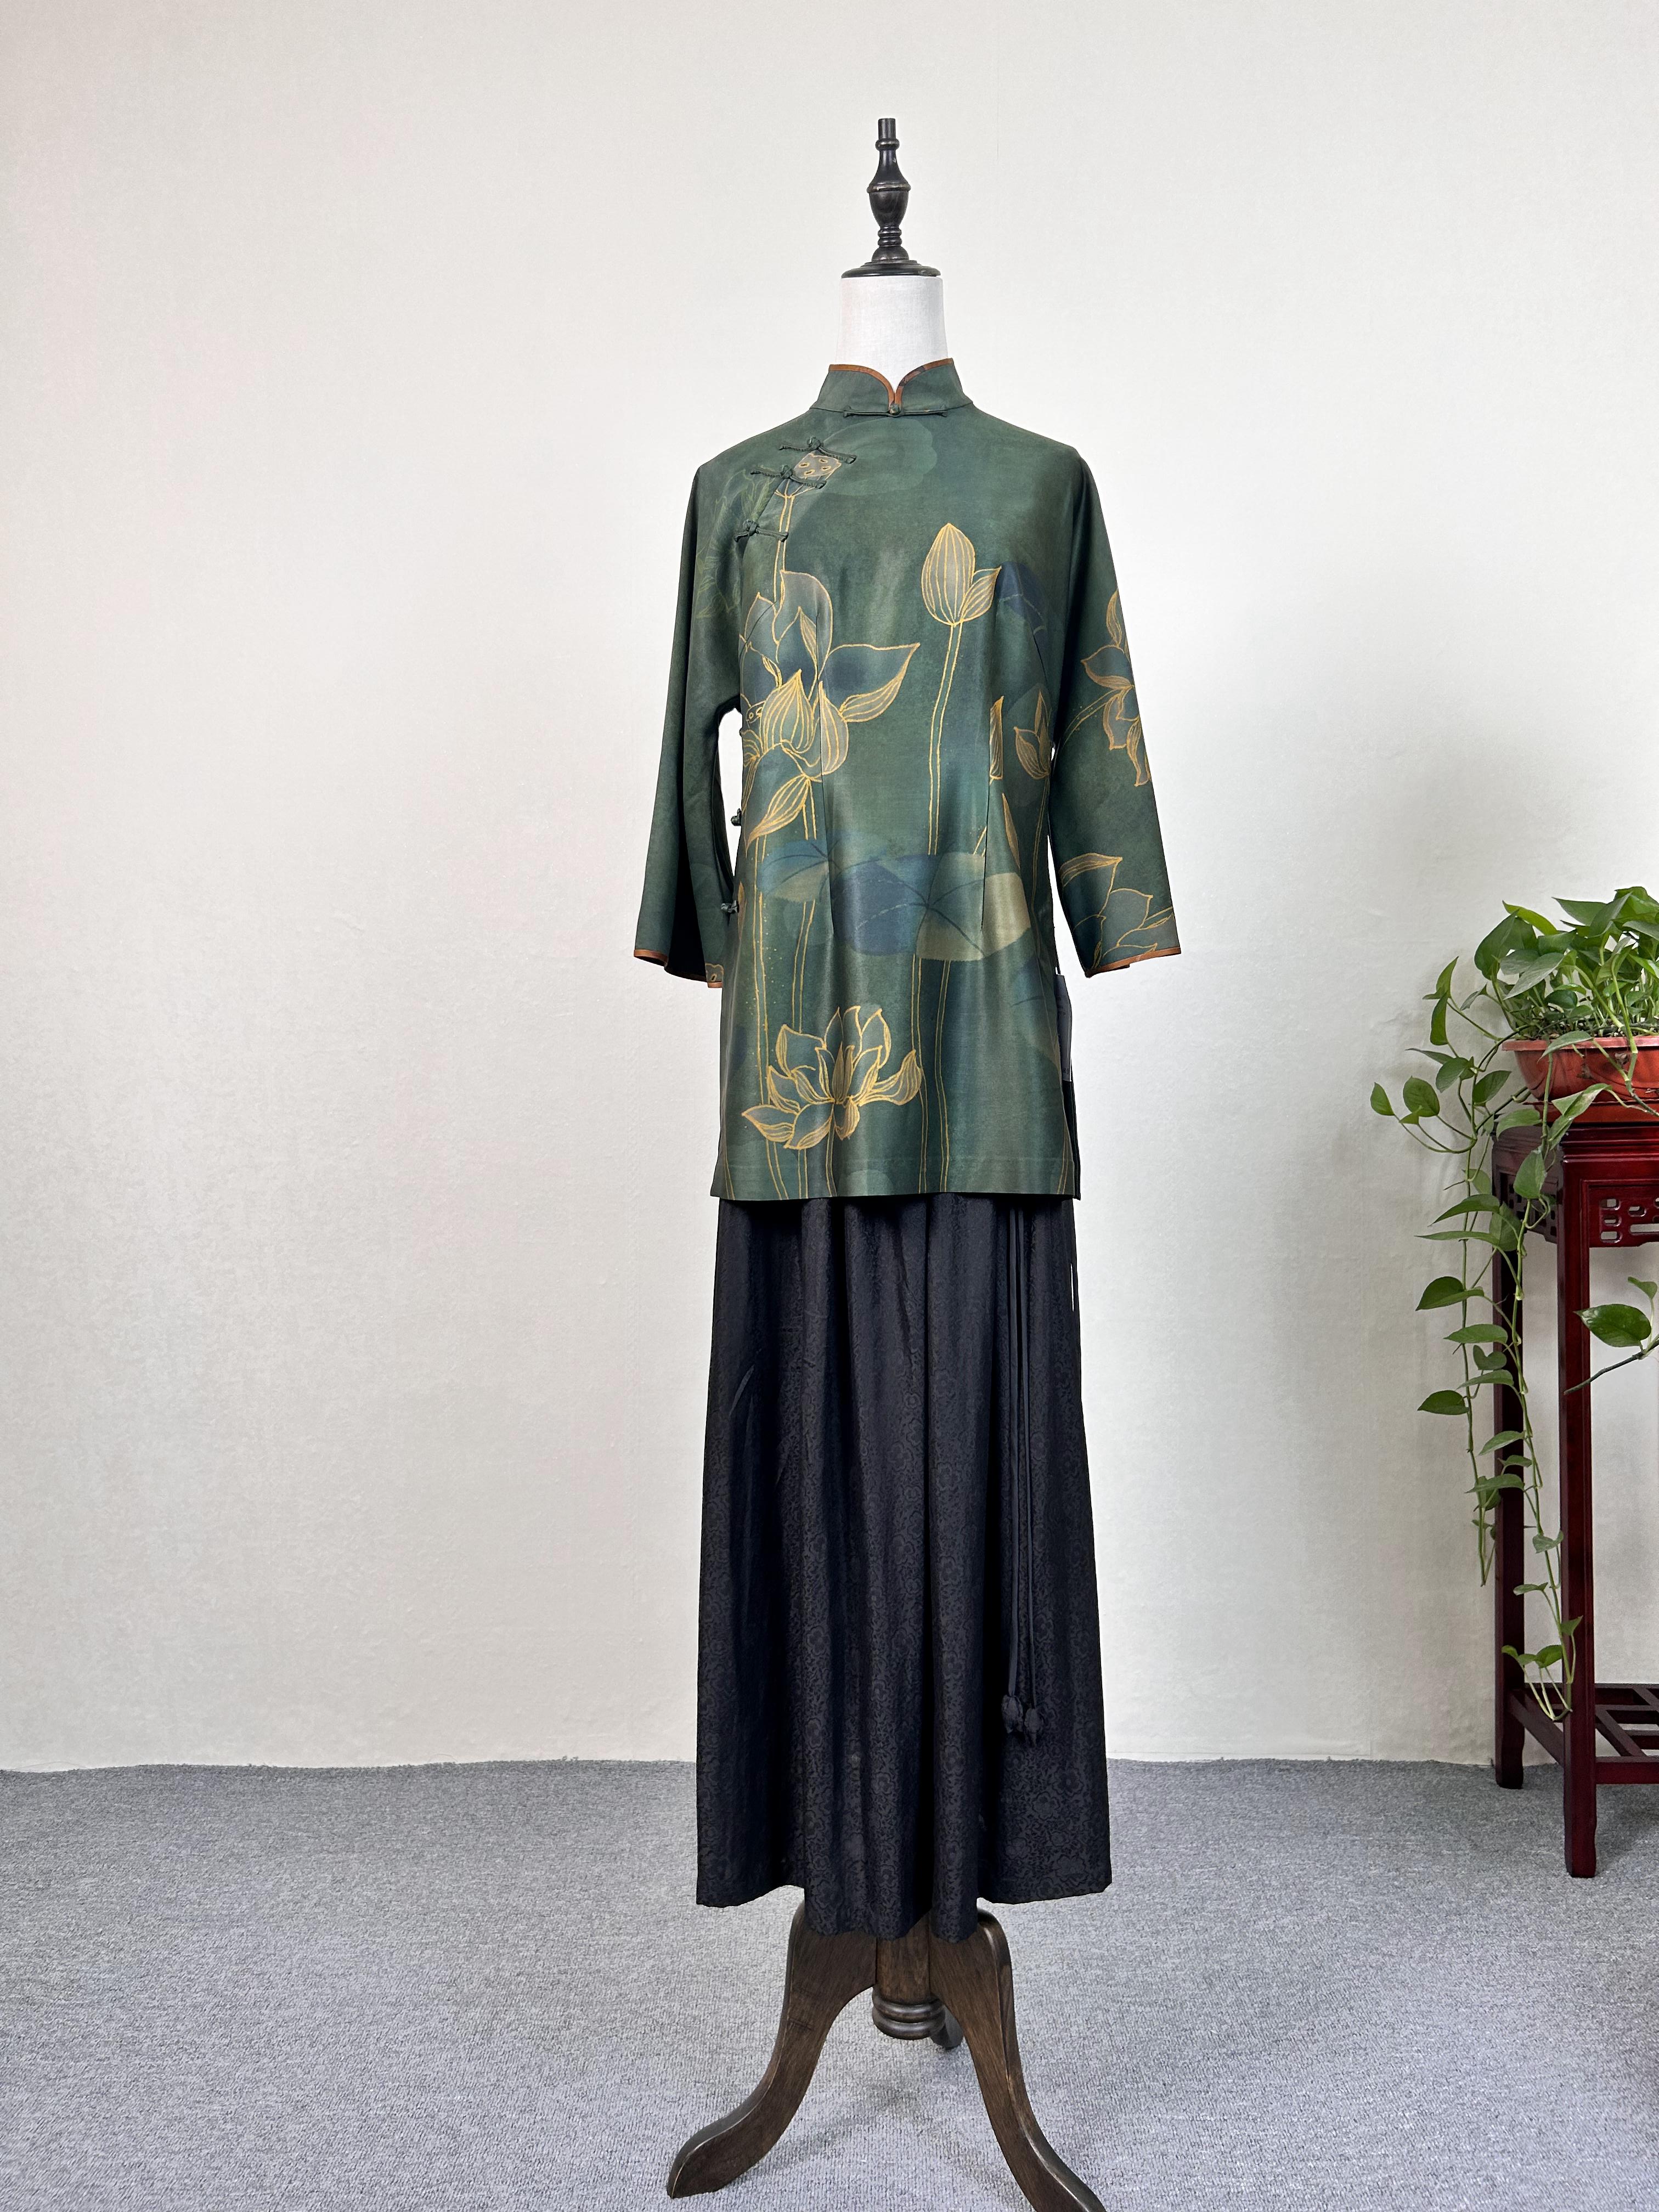 Fang Lu Guofeng Xiangyun Saao wears a top